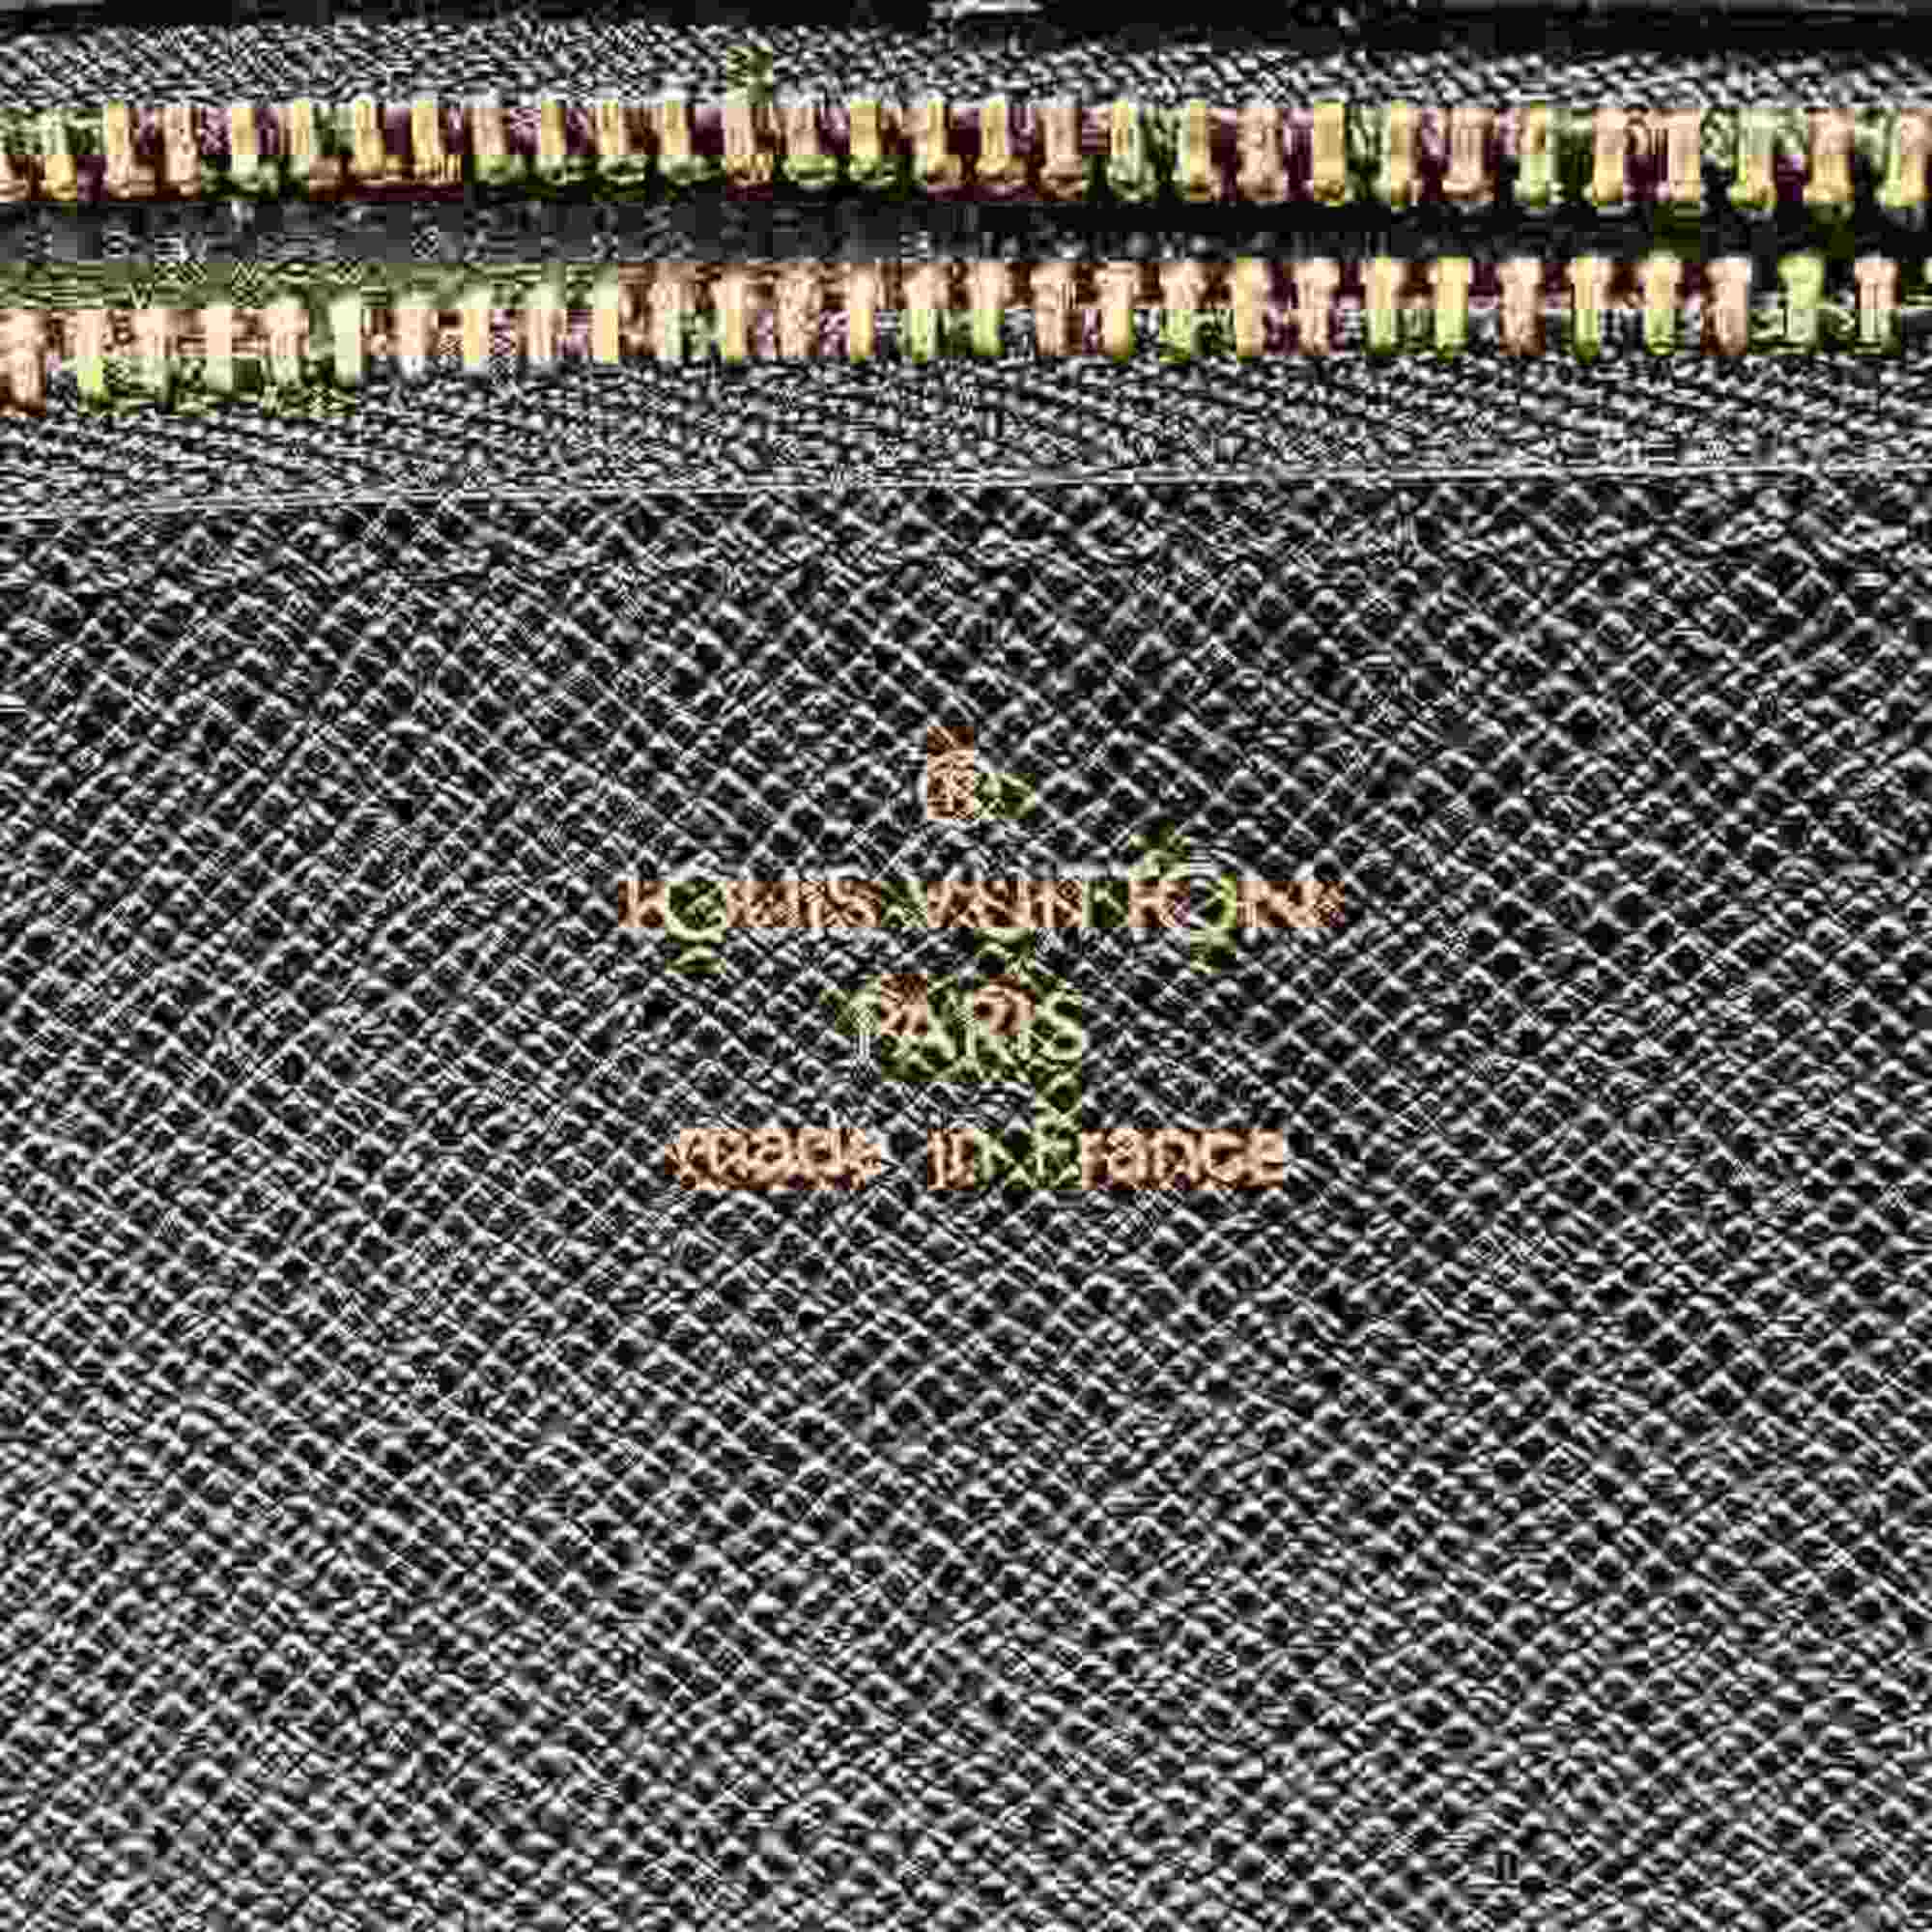 Louis Vuitton Epi Serie Dragonne M52762 Bag Clutch bag Second Men's